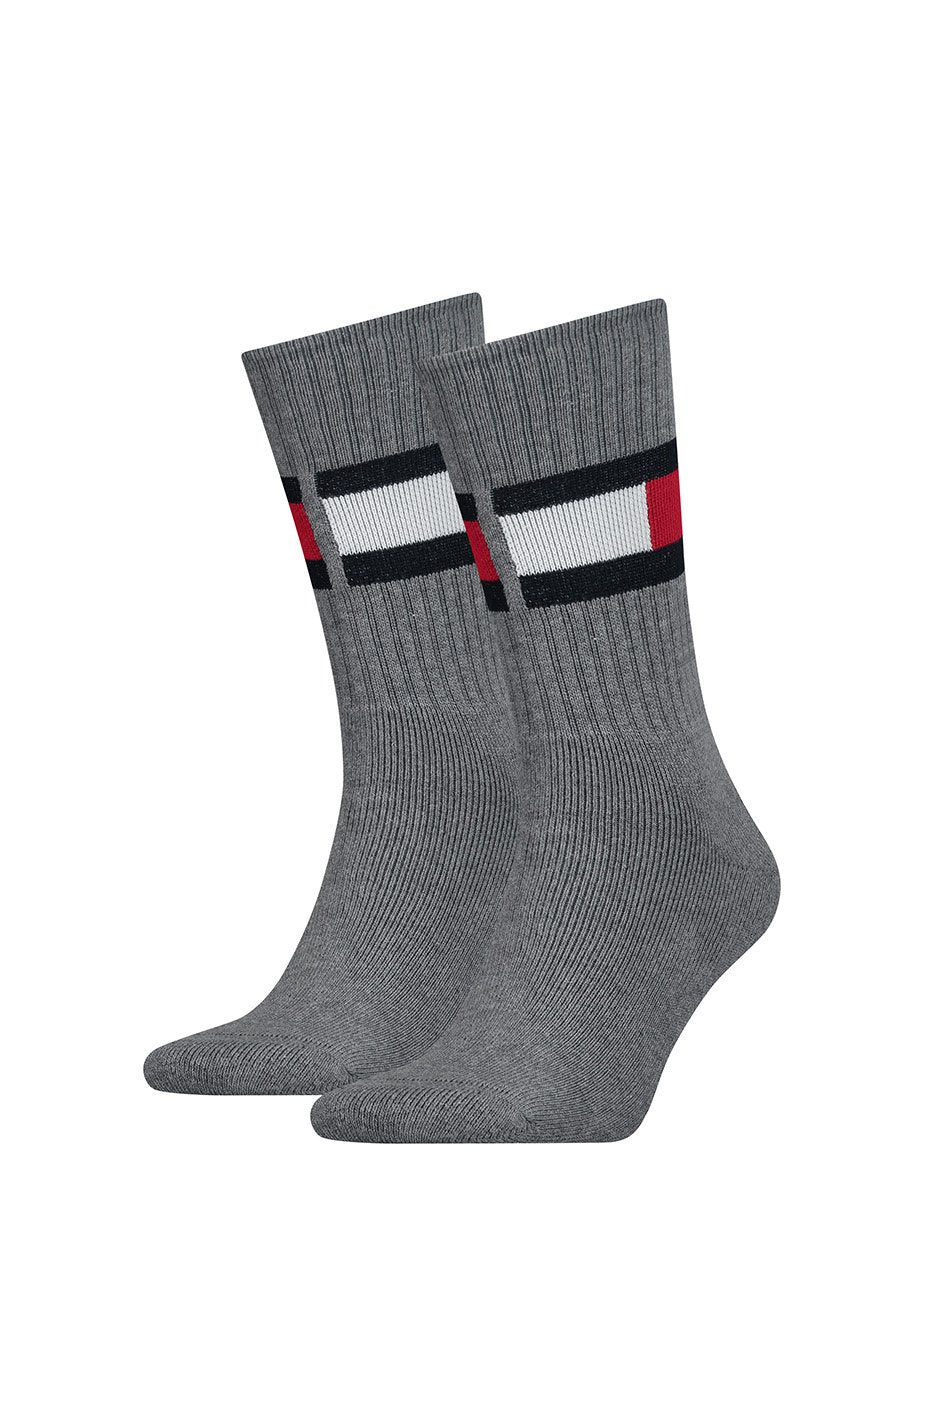 Tommy Hilfiger Men's Original Flag Socks